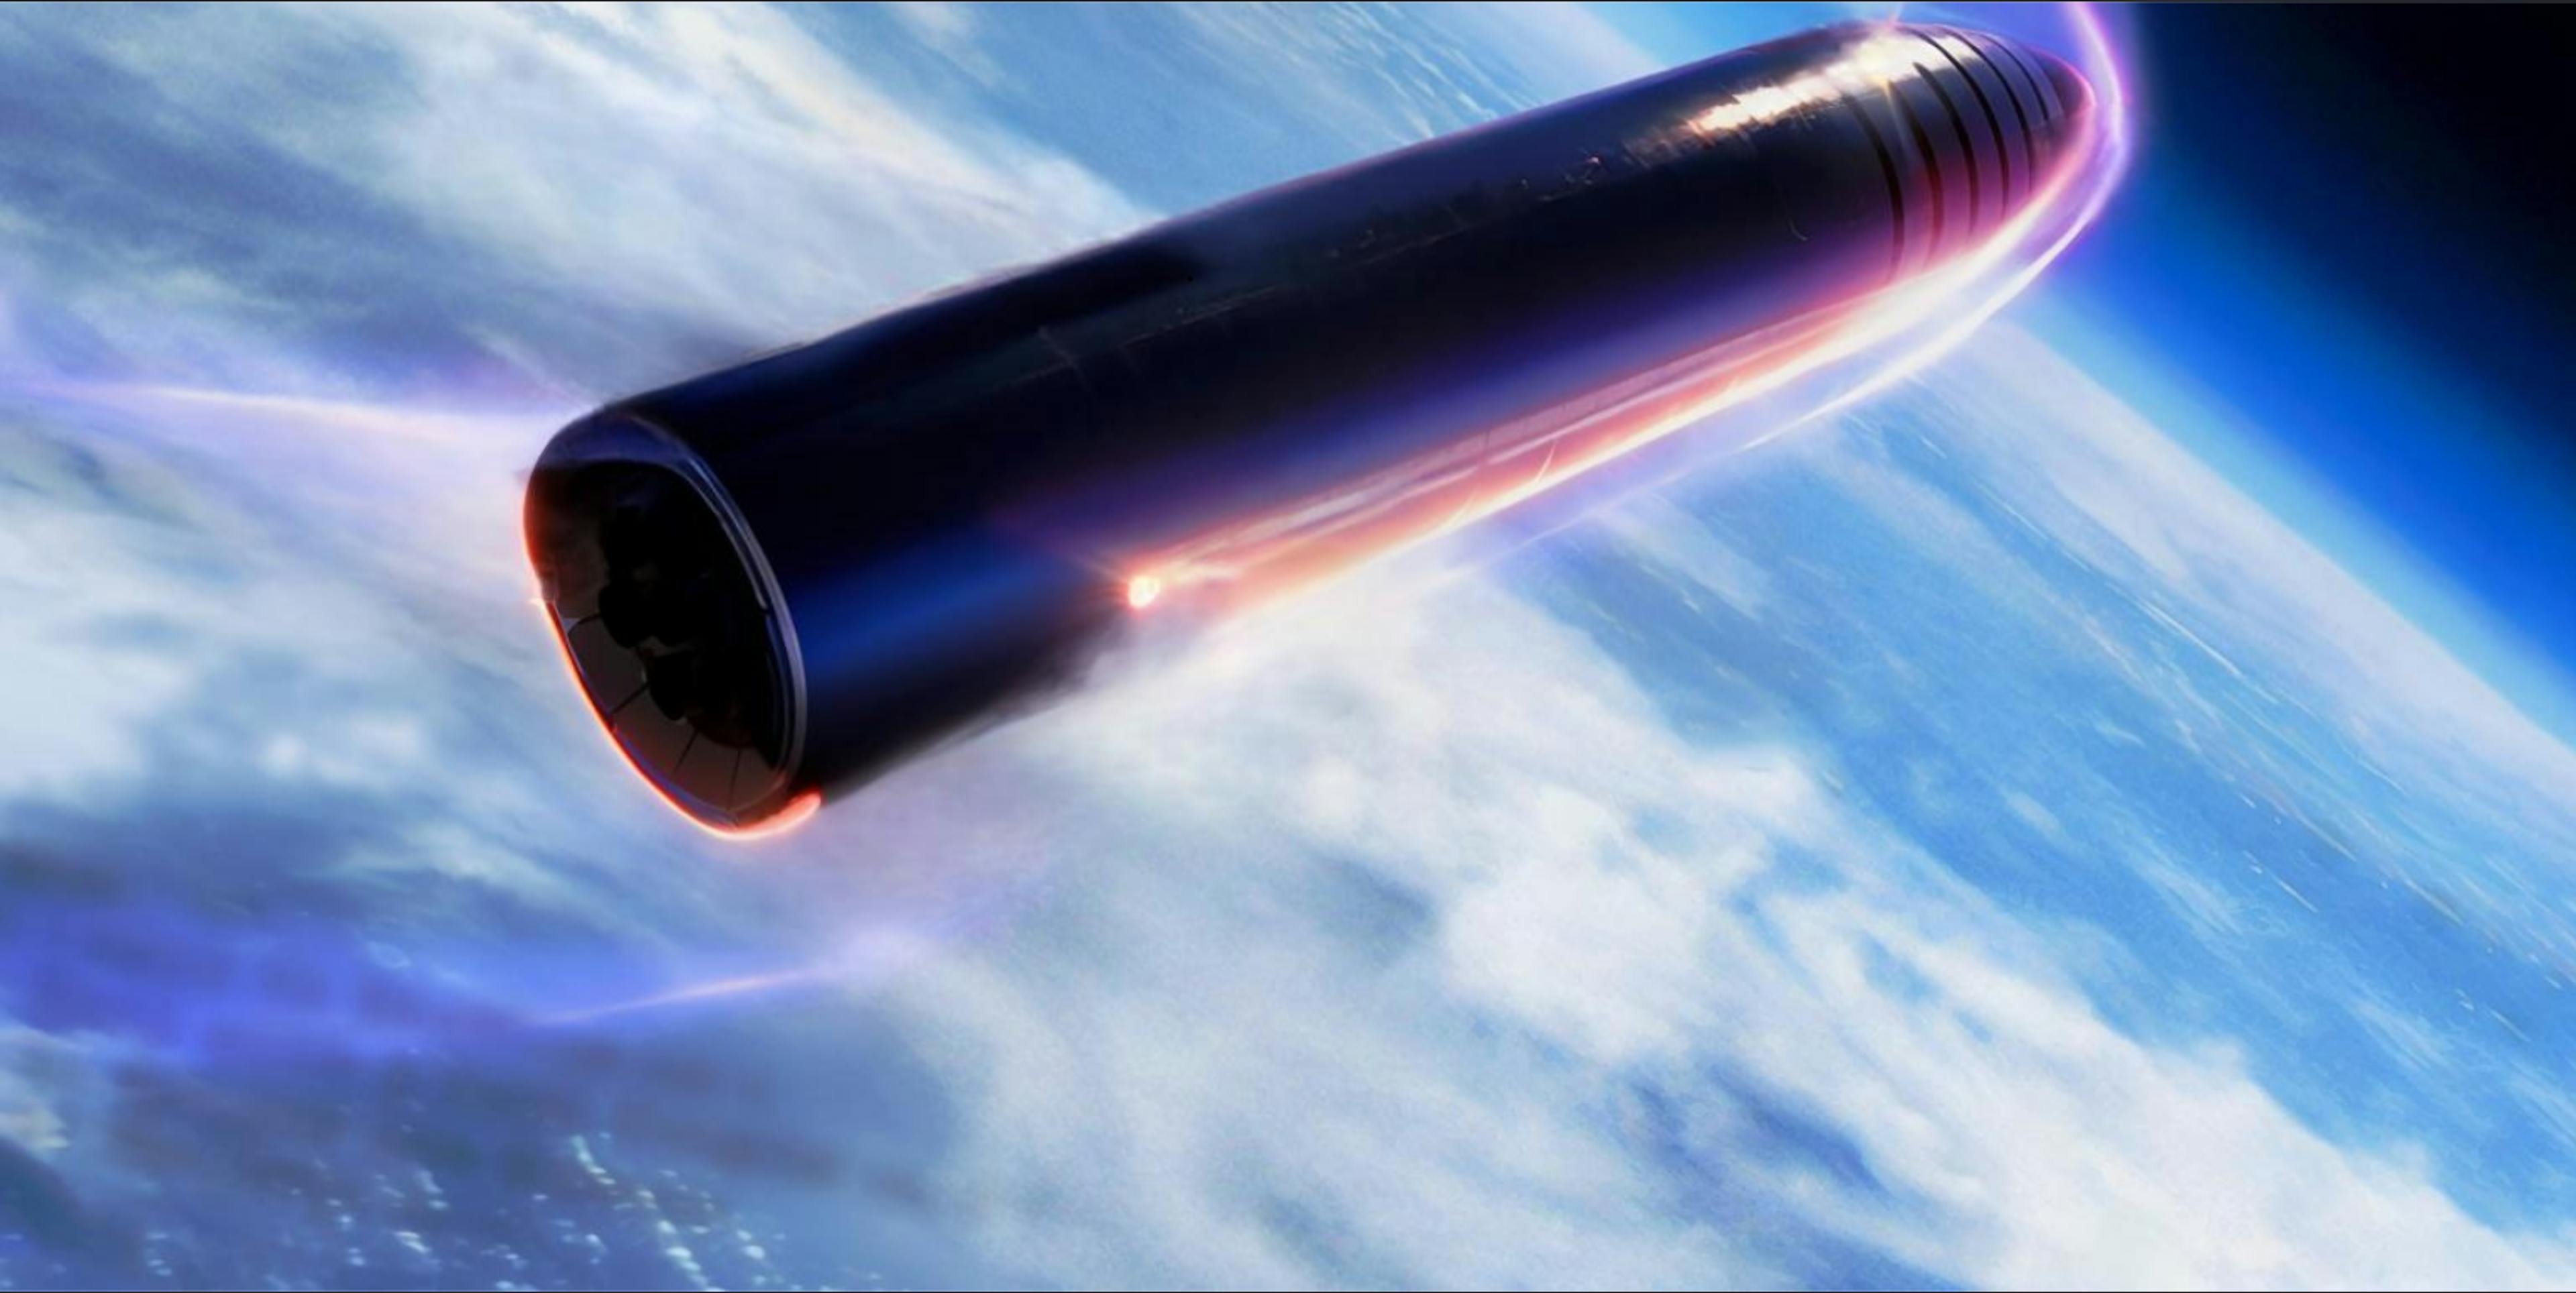 featured image - Supercavitation 'Em Steered Starship: Chuyển hướng plasma thay vì cố gắng ngăn chặn nó